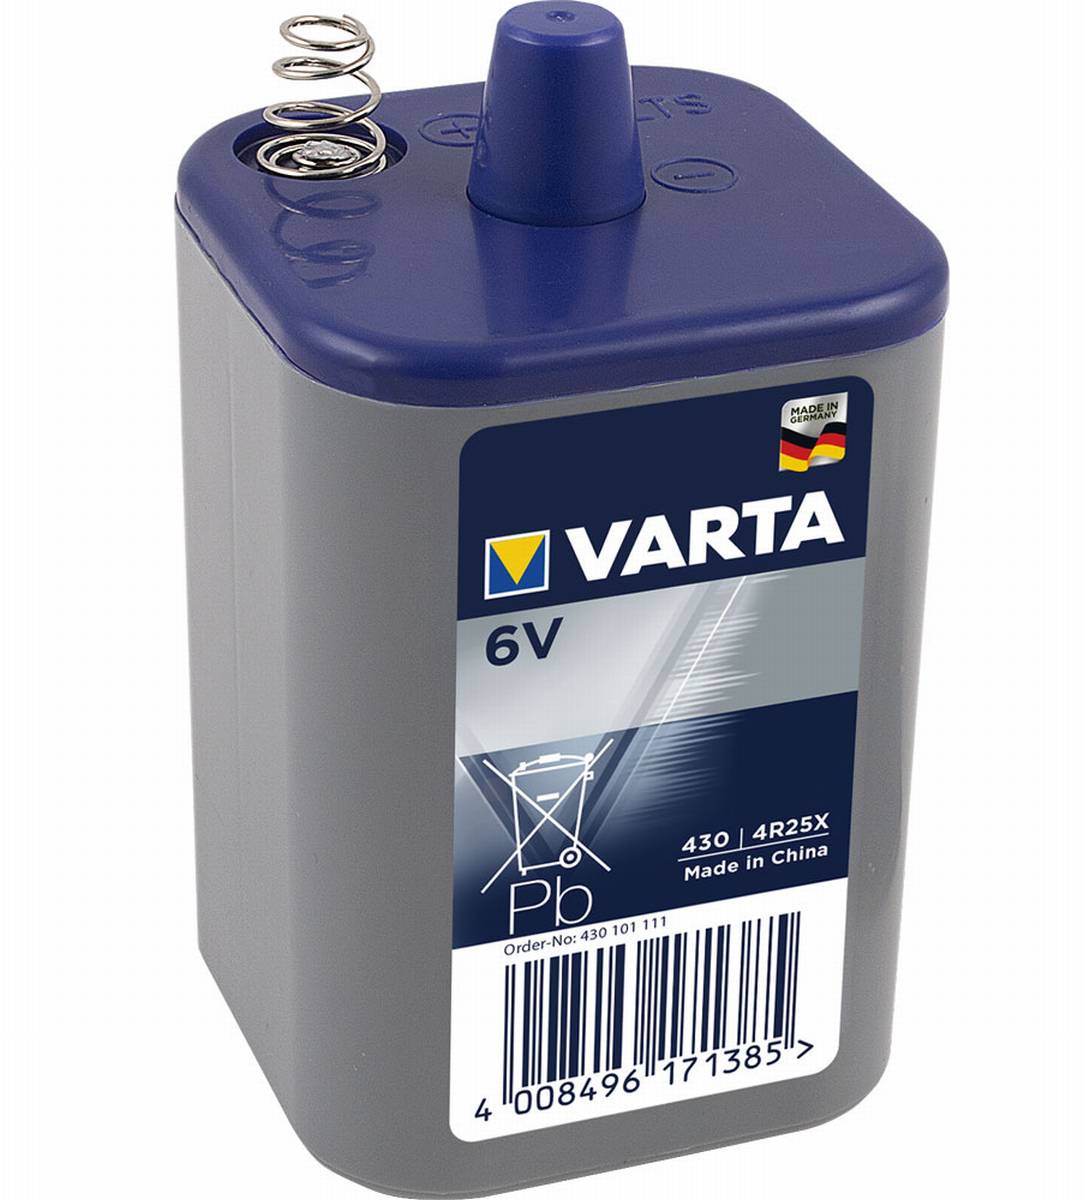 Varta Professional 430 4R25X 6V Block Battery Light 7.5Ah Zinc Carbon (sciolto)